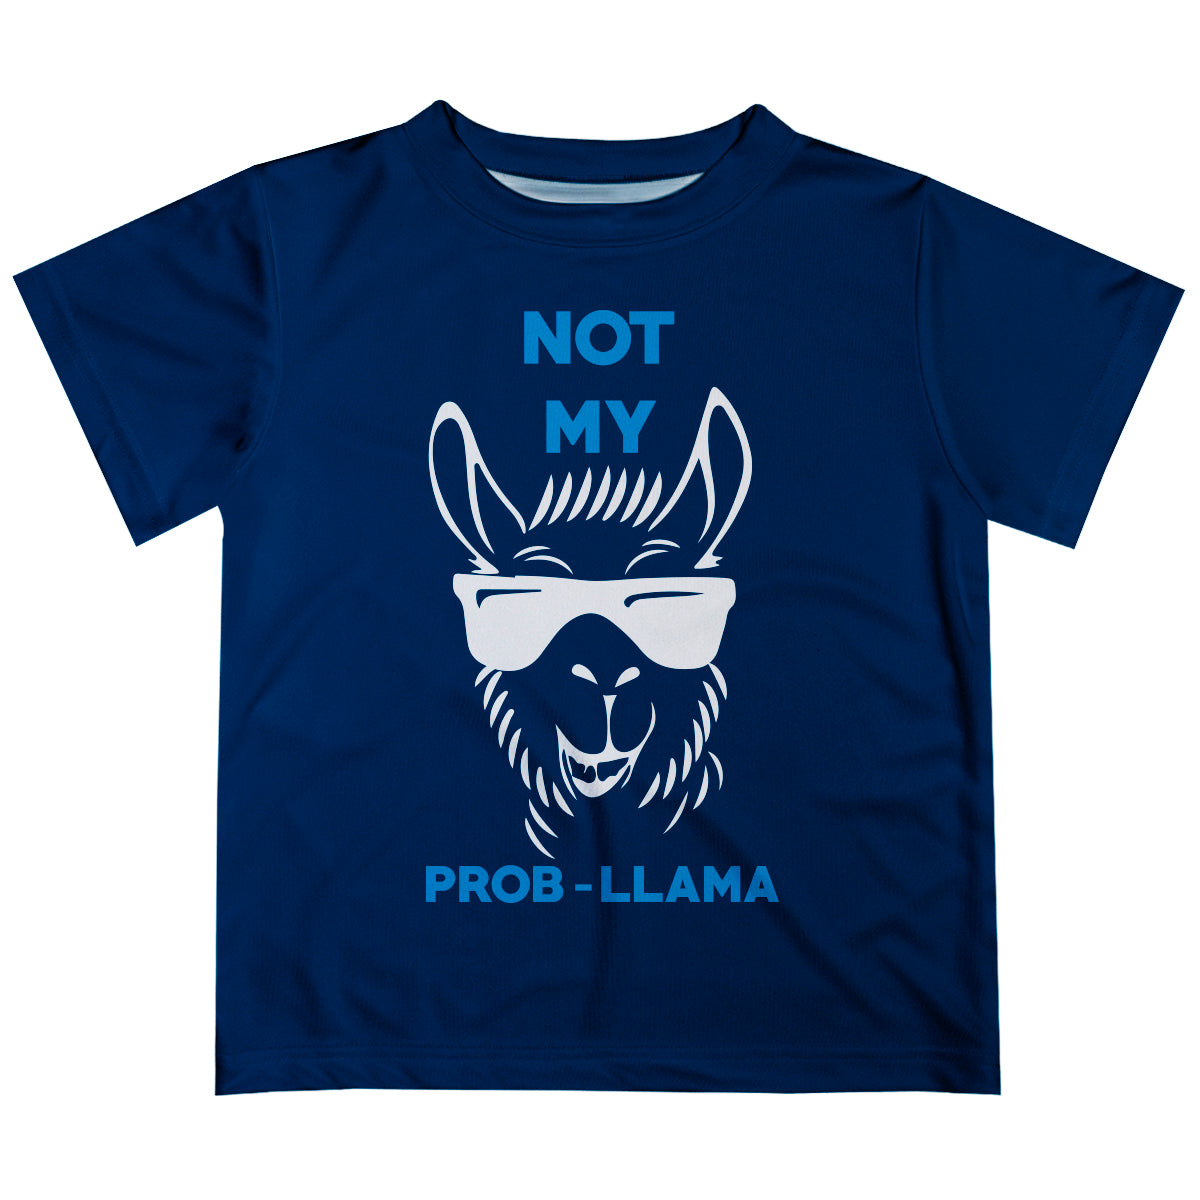 Navy 'Not my probllama' boys tee shirt - Wimziy&Co.